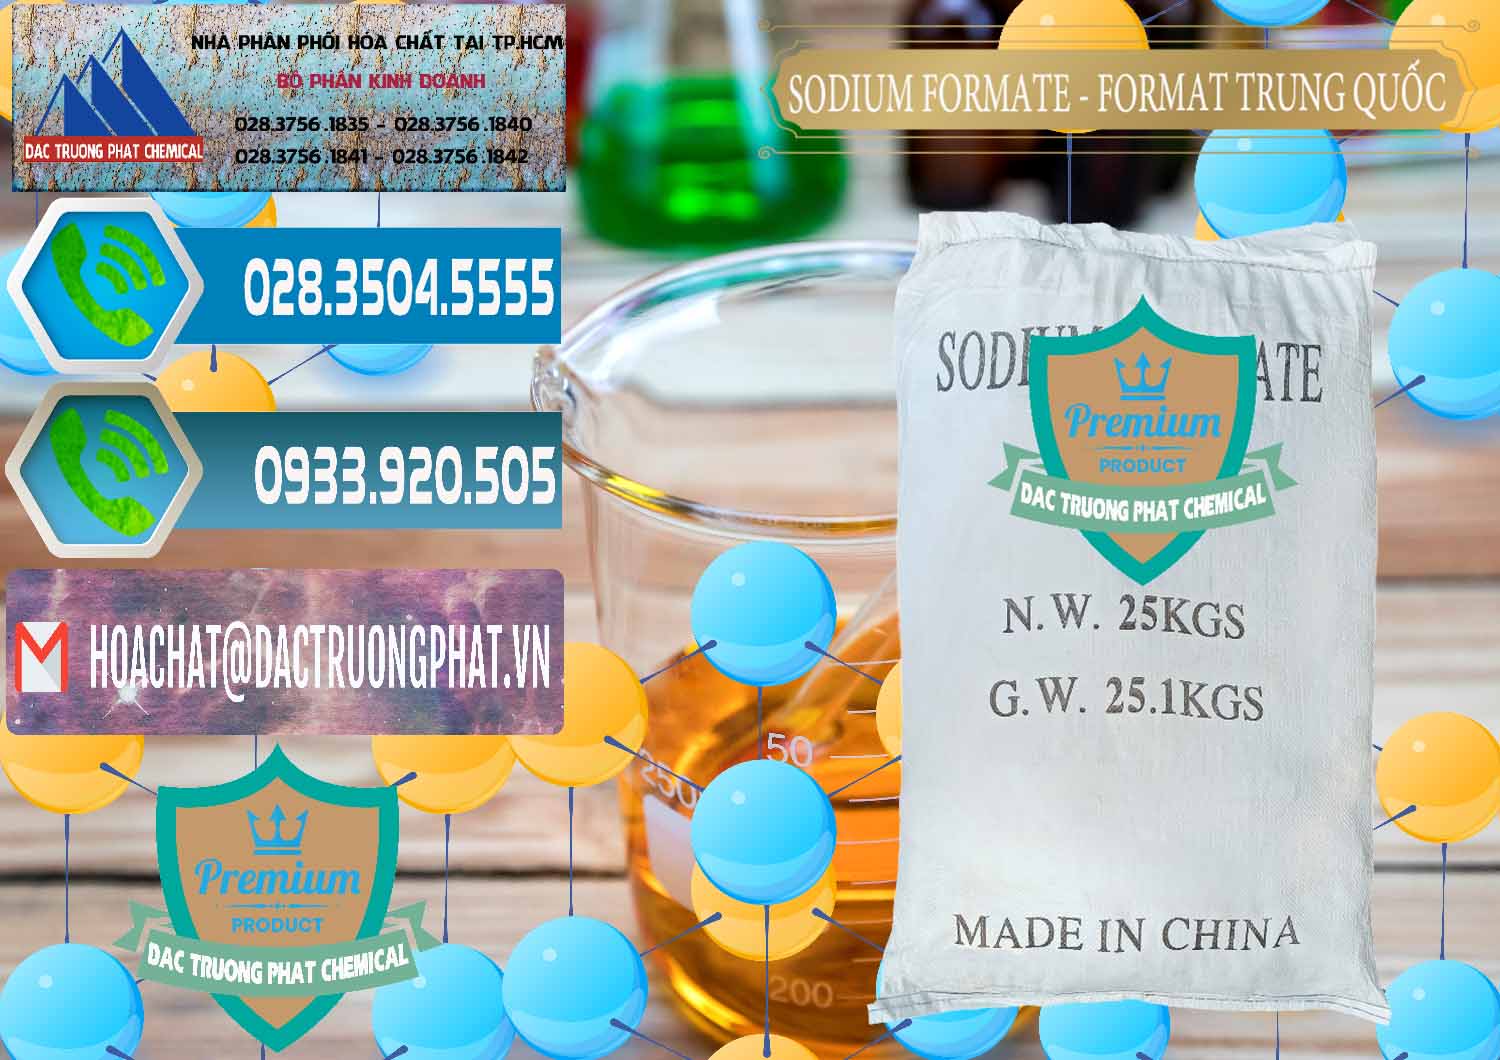 Chuyên bán và phân phối Sodium Formate - Natri Format Trung Quốc China - 0142 - Công ty cung cấp và bán hóa chất tại TP.HCM - congtyhoachat.net